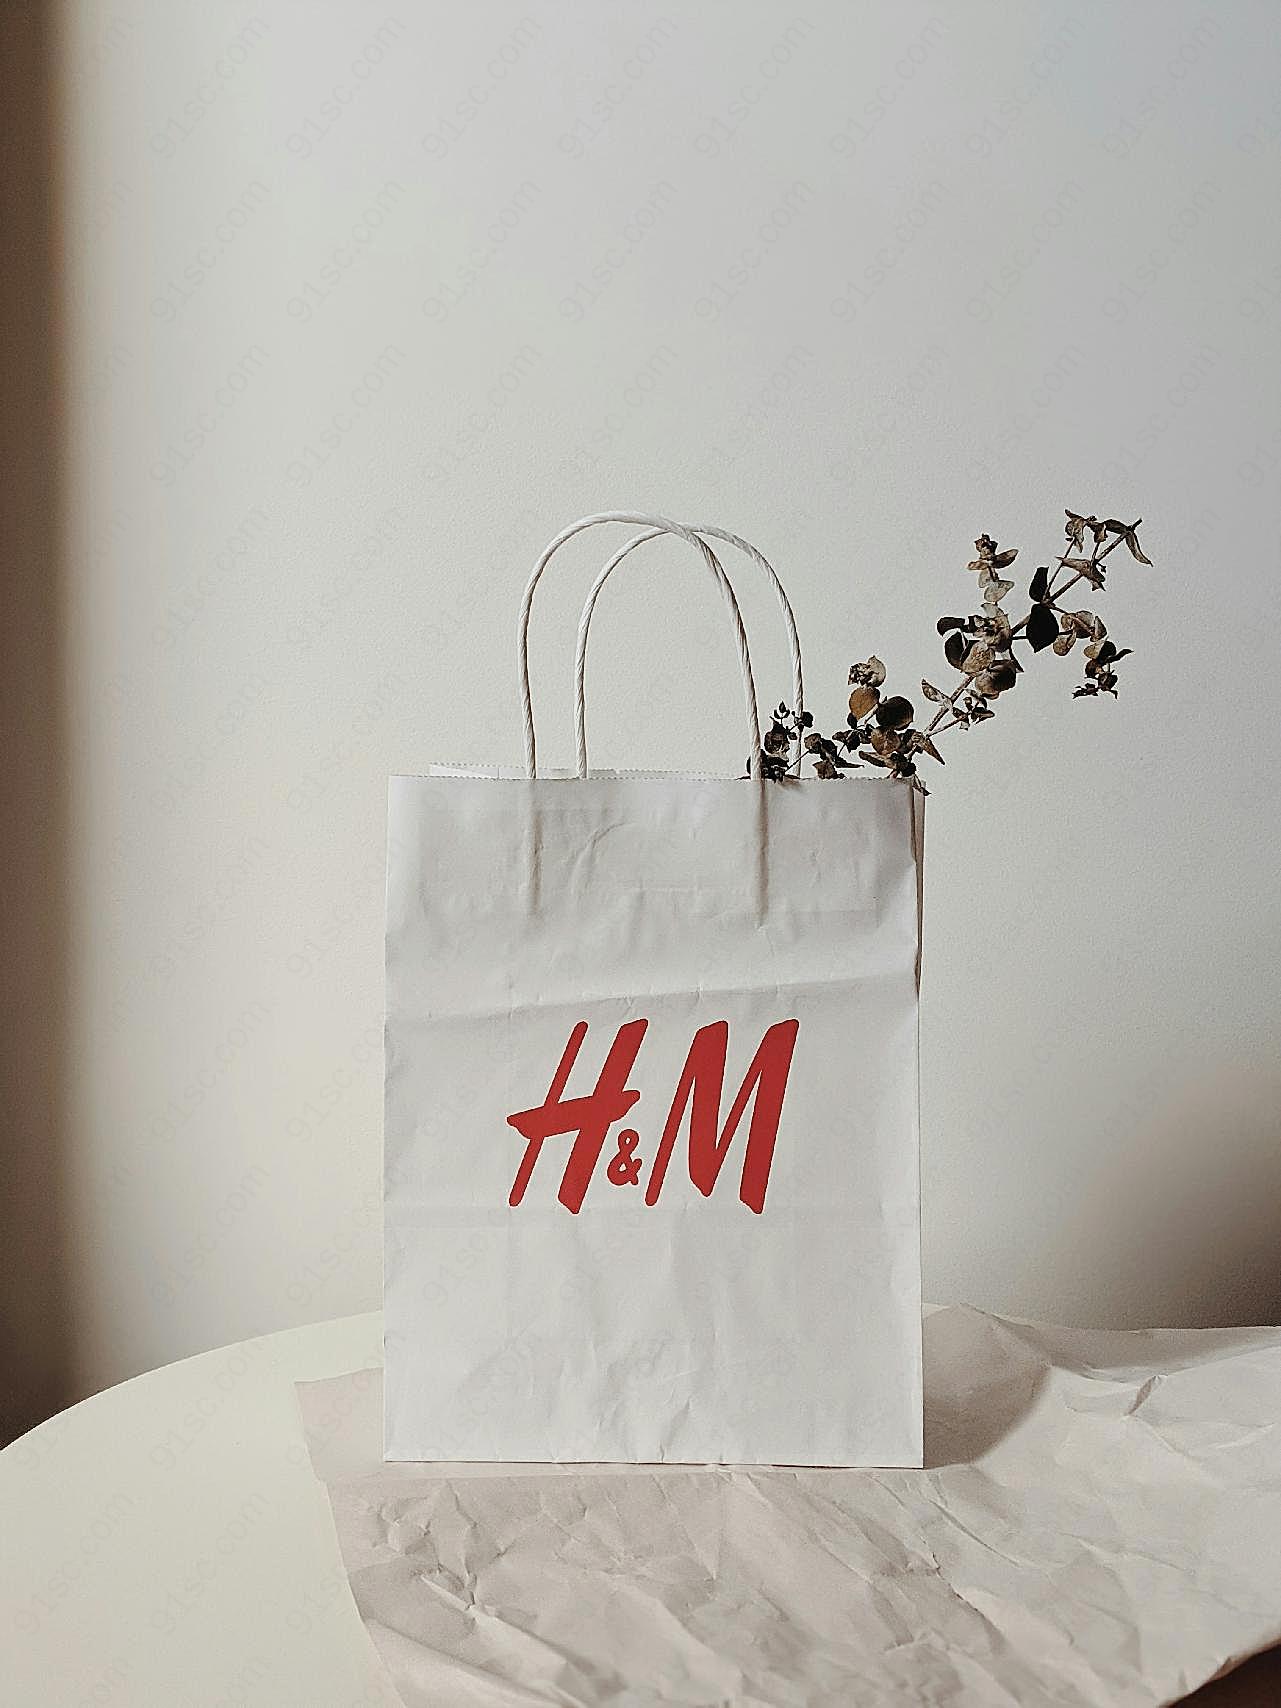 h&m环保纸袋图片生活用品